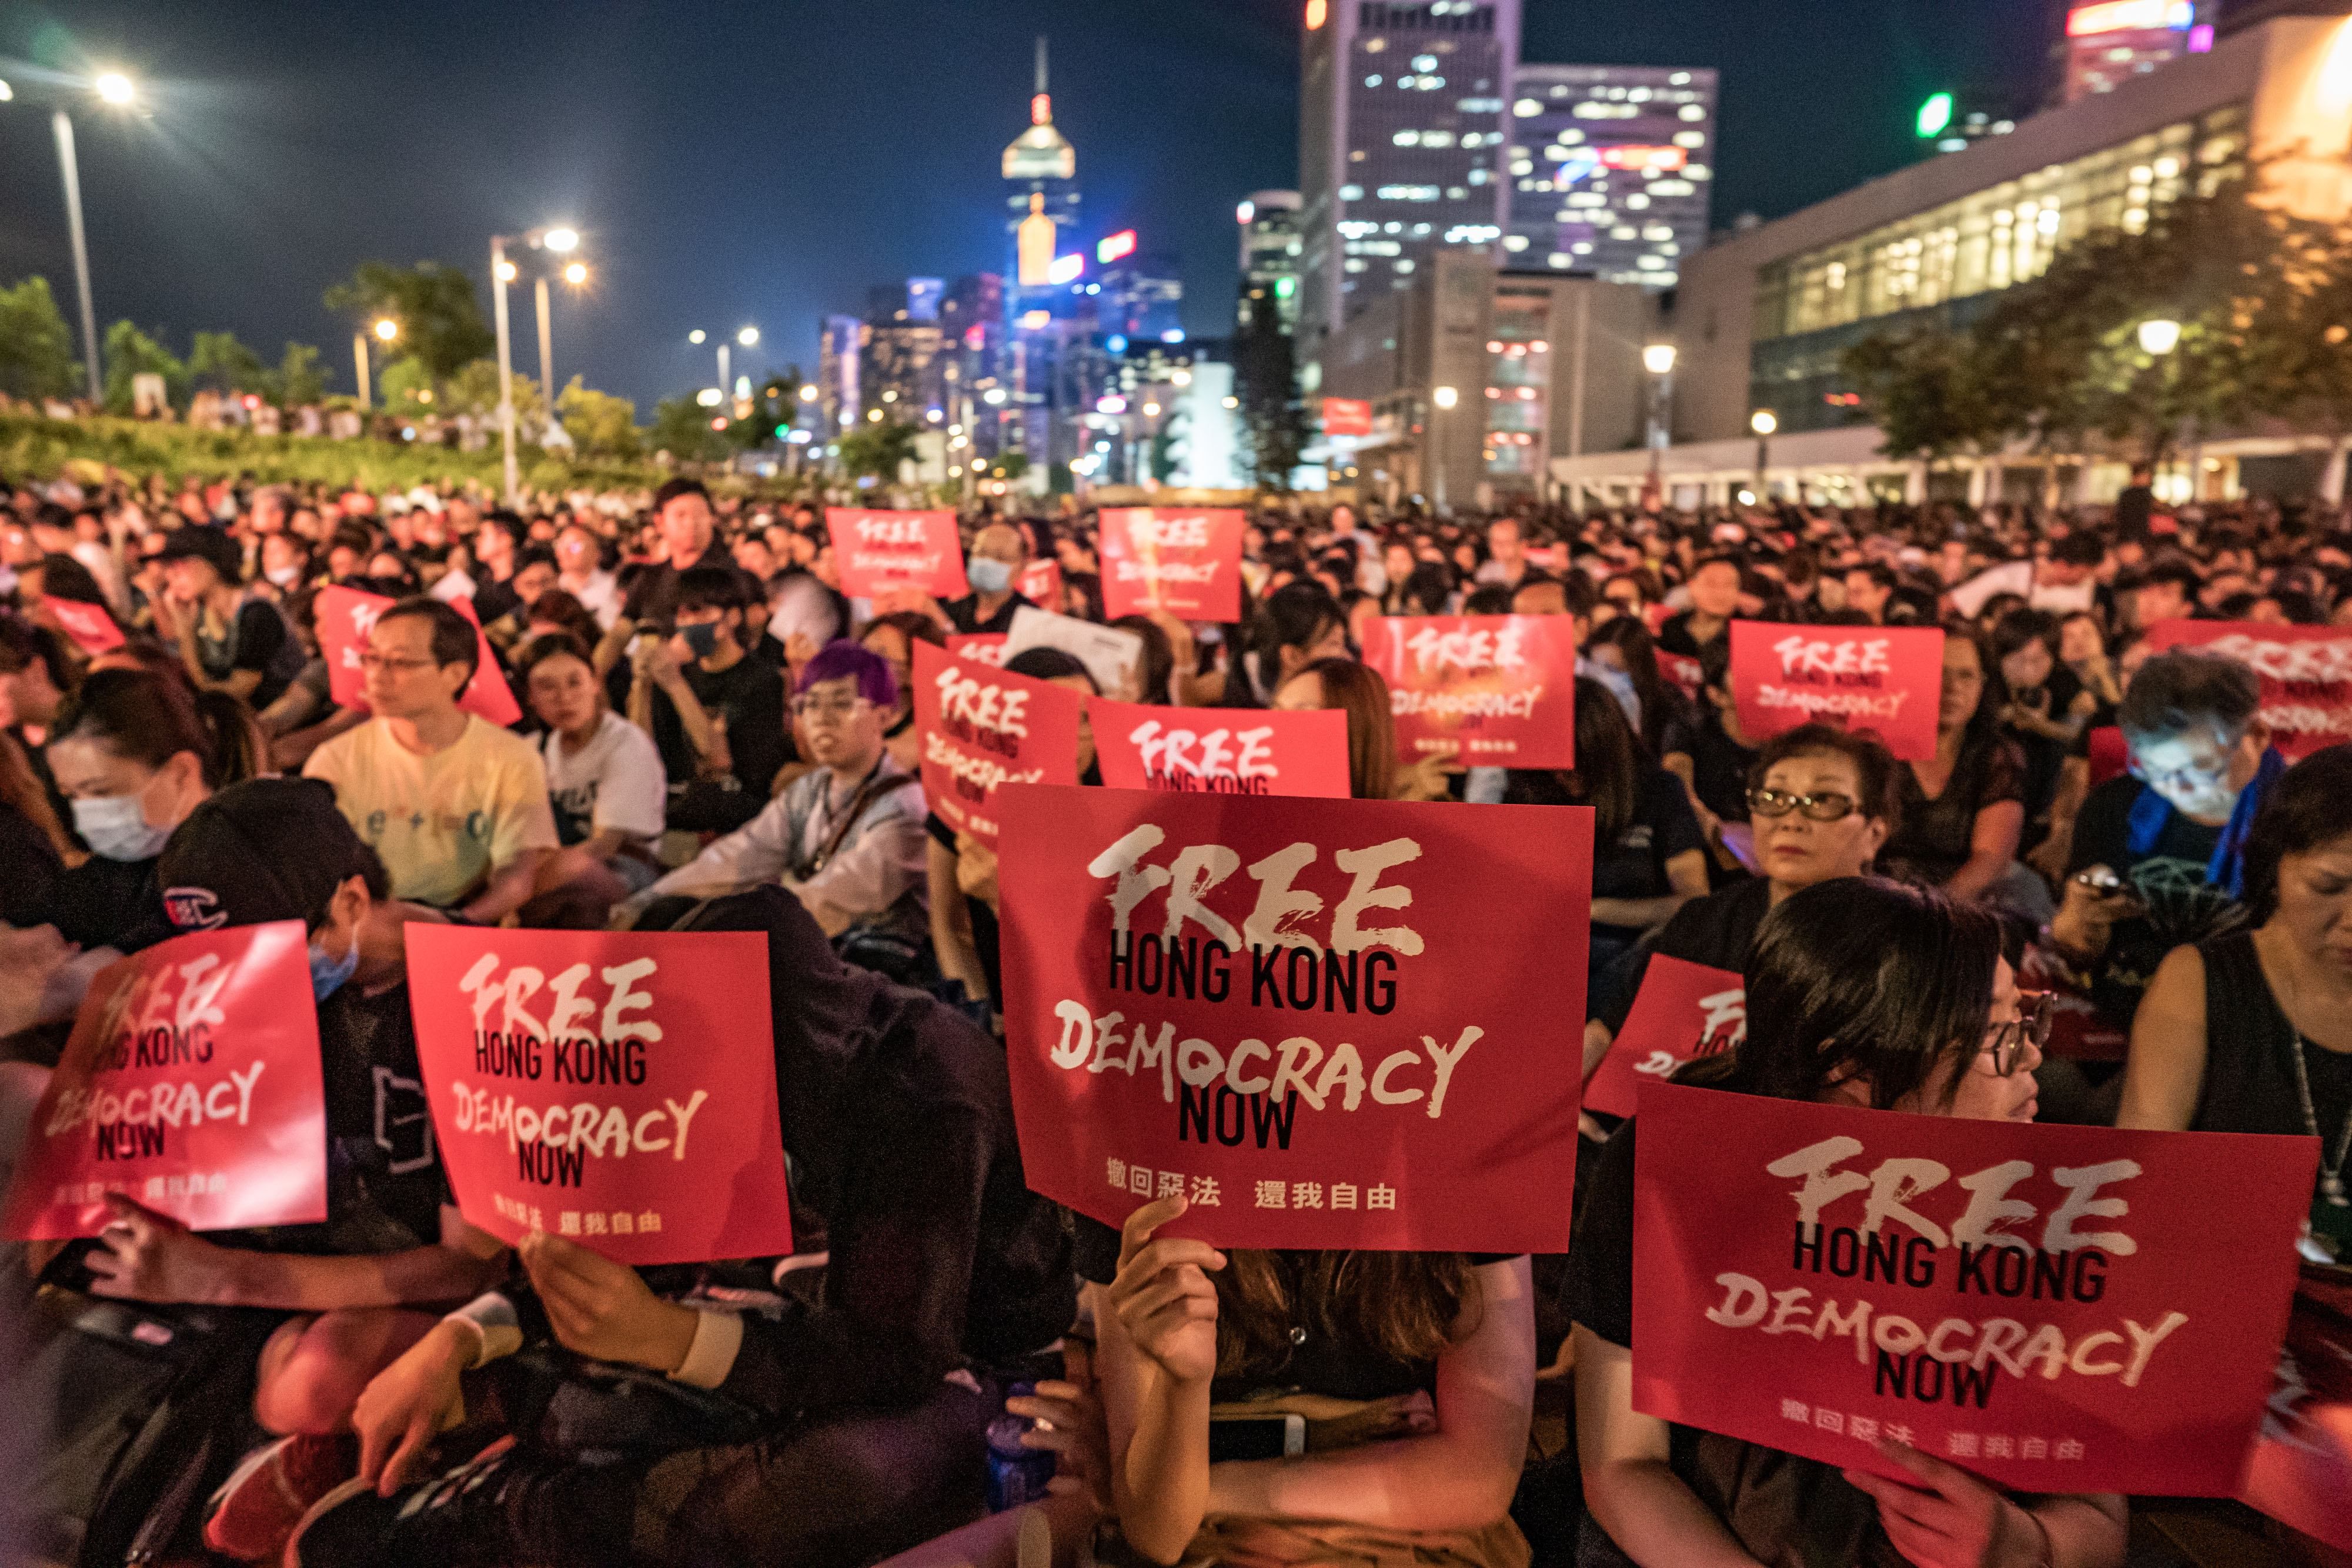 США ввели санкции против Китая из-за ограничения автономии Гонконга: как отреагировал Пекин